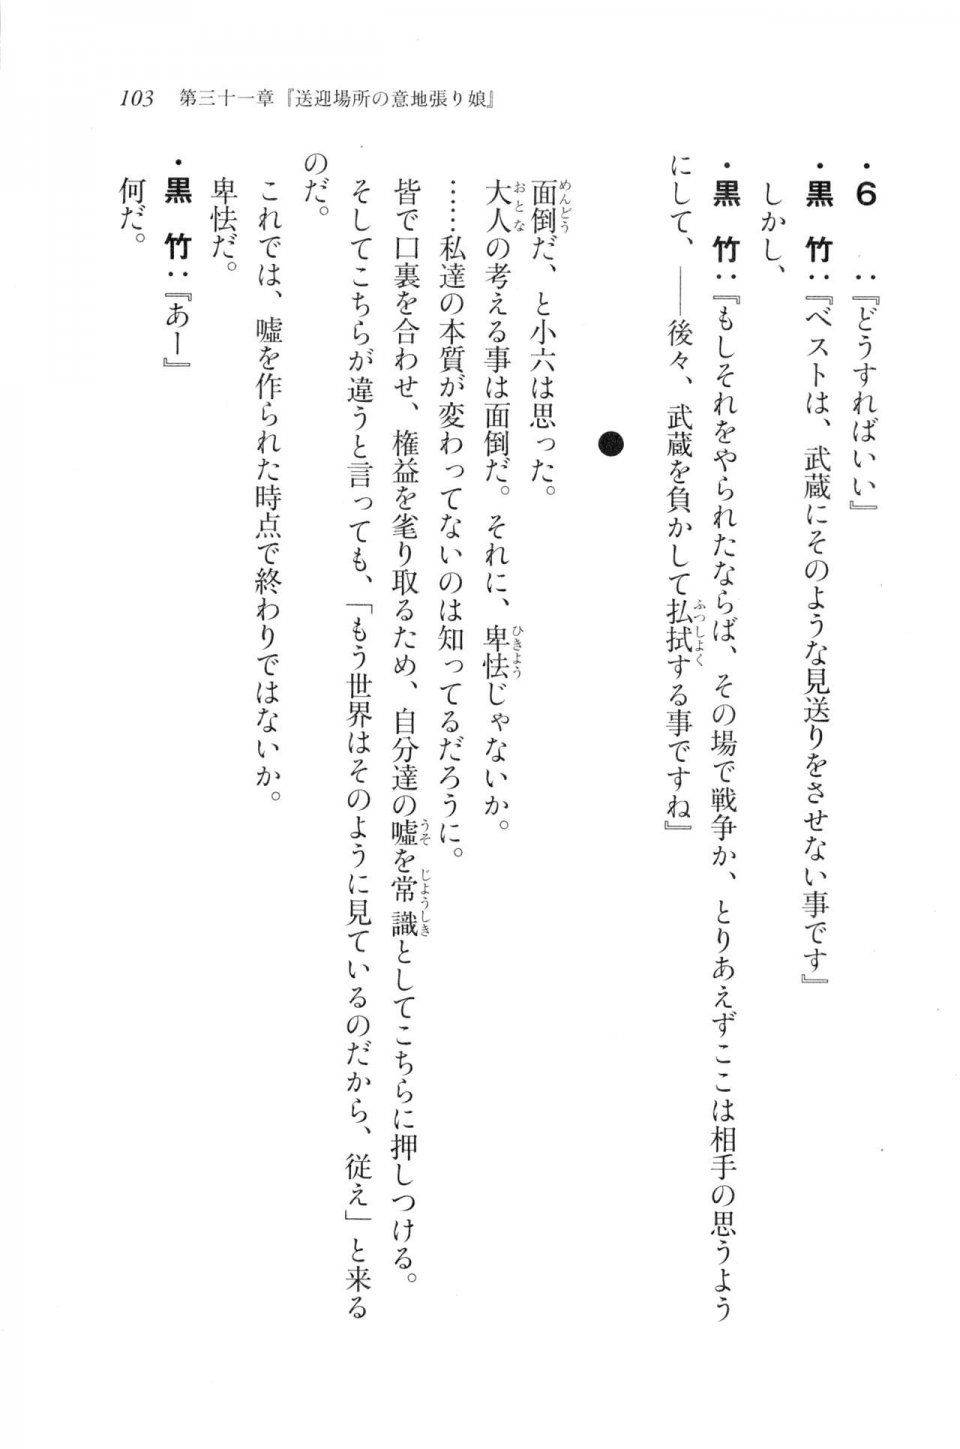 Kyoukai Senjou no Horizon LN Vol 20(8B) - Photo #103